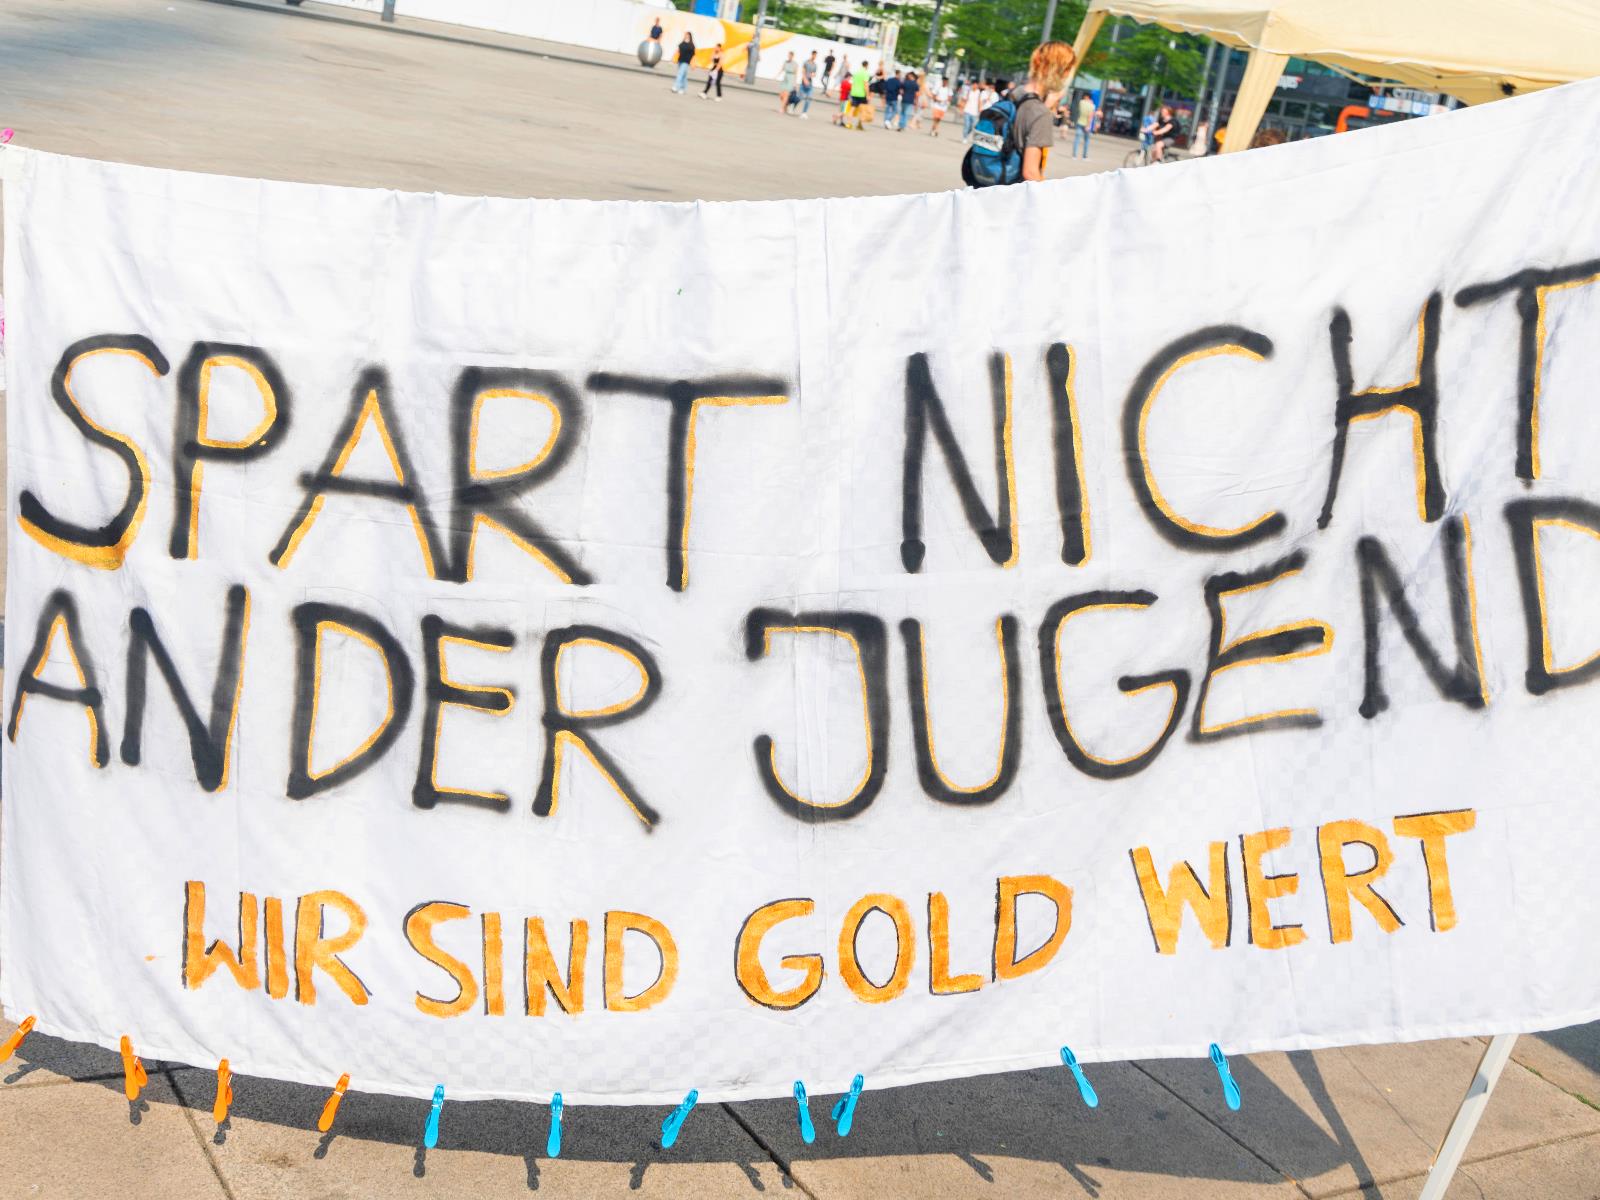 Banner mit Aufdruck "Spart nicht an der Jugend - Wir sind Gold wert"